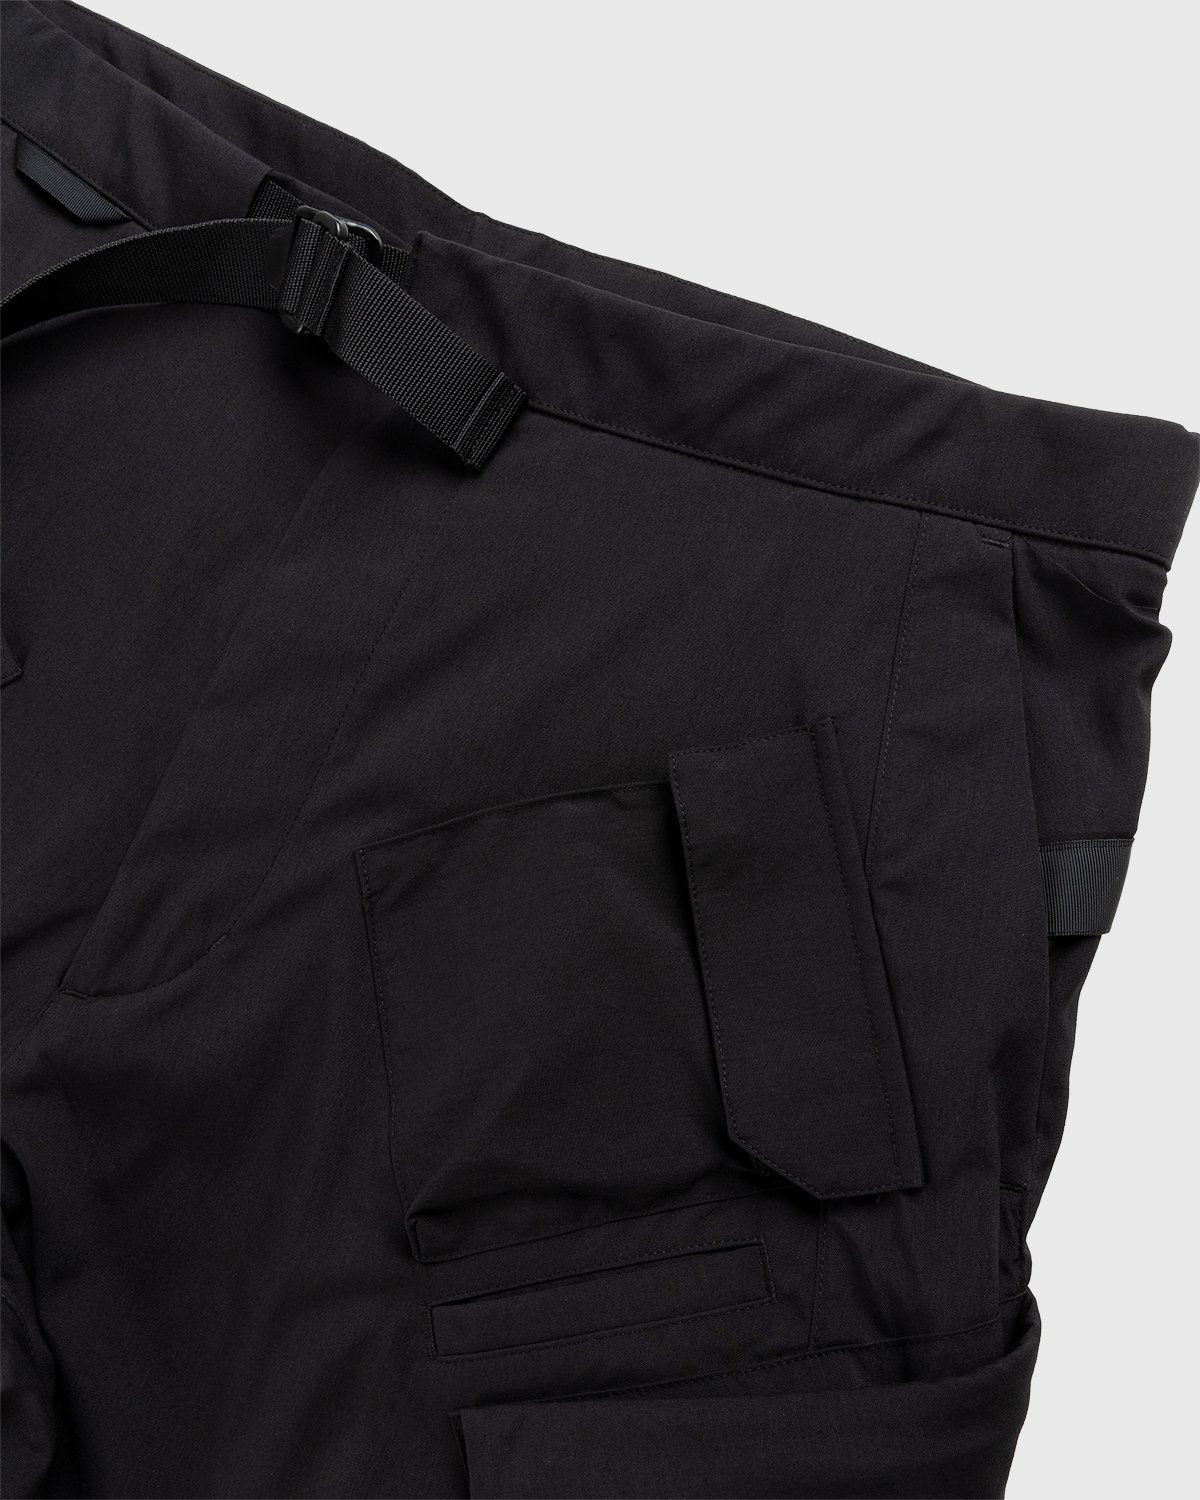 ACRONYM – SP29-M Cargo Shorts Black - Shorts - Black - Image 4